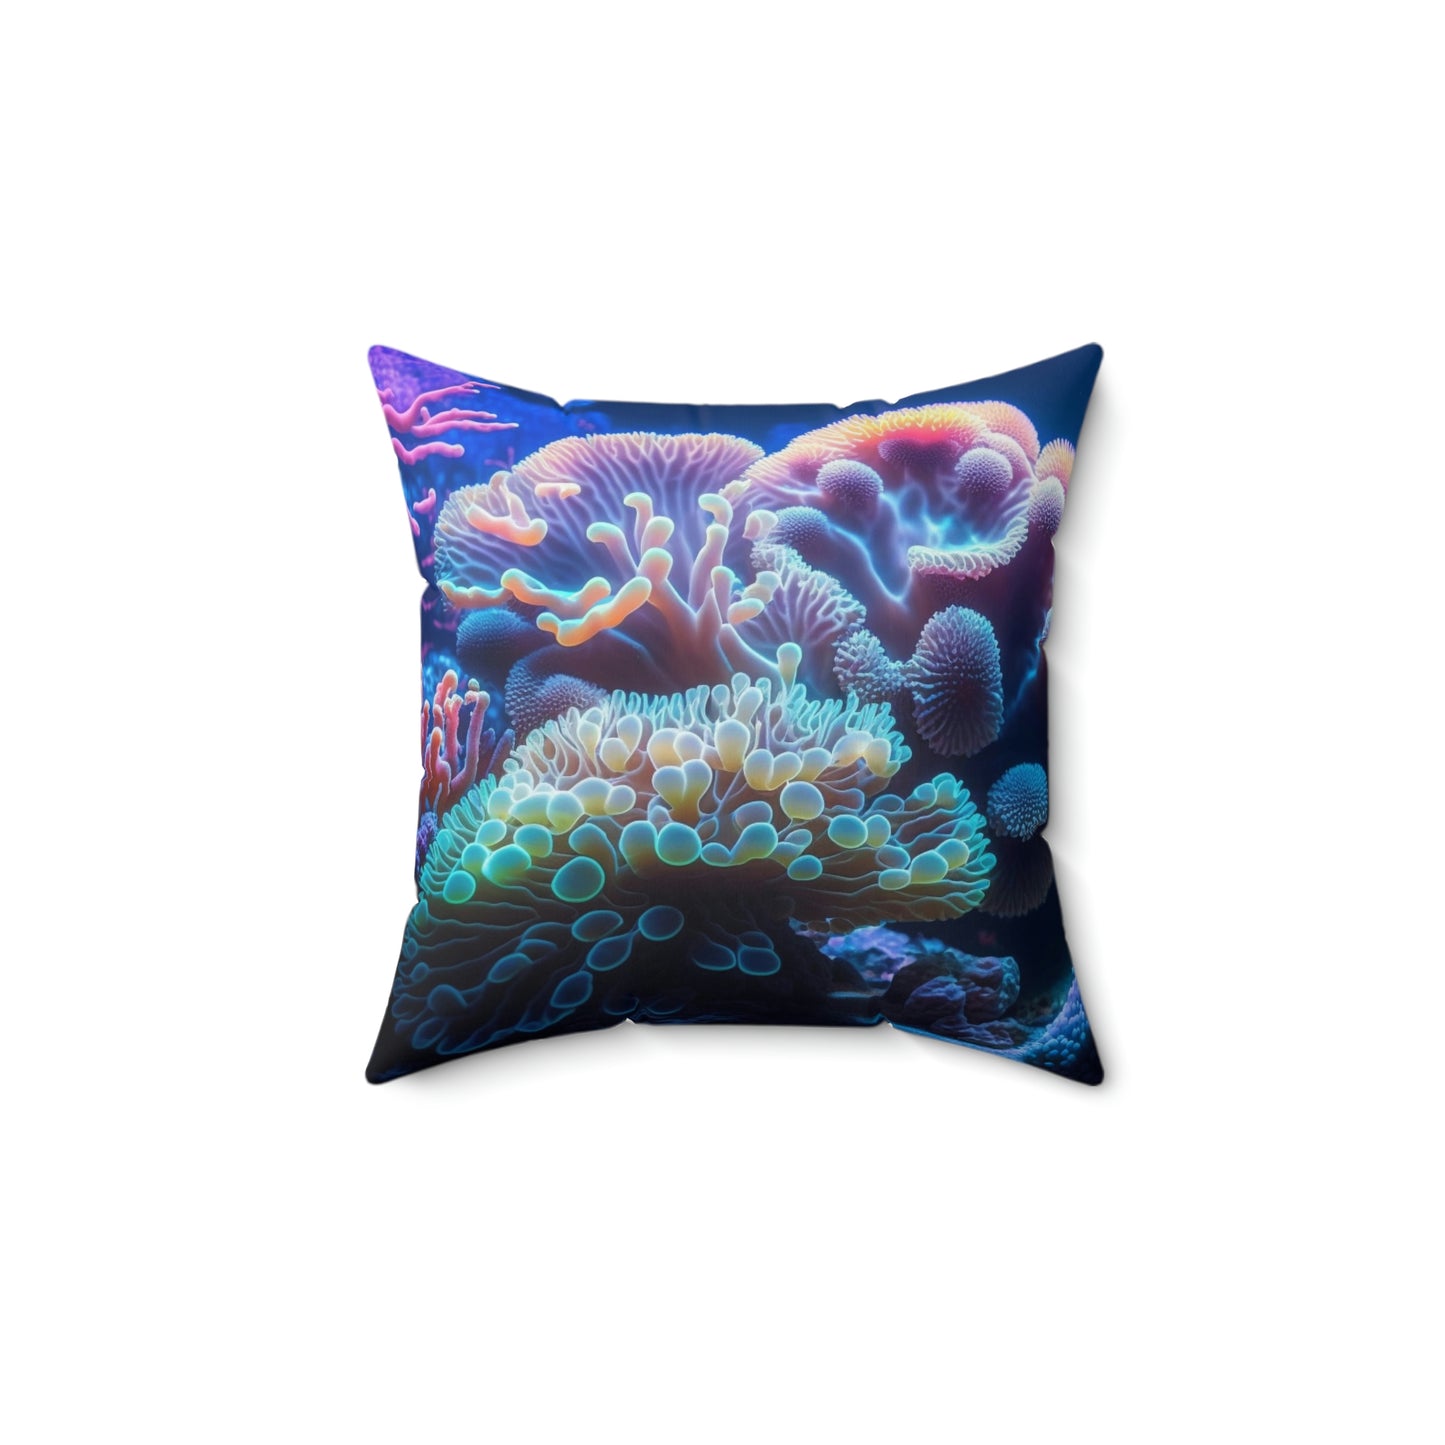 Deep Sea Kingdom Pillow - Reef of Clowns